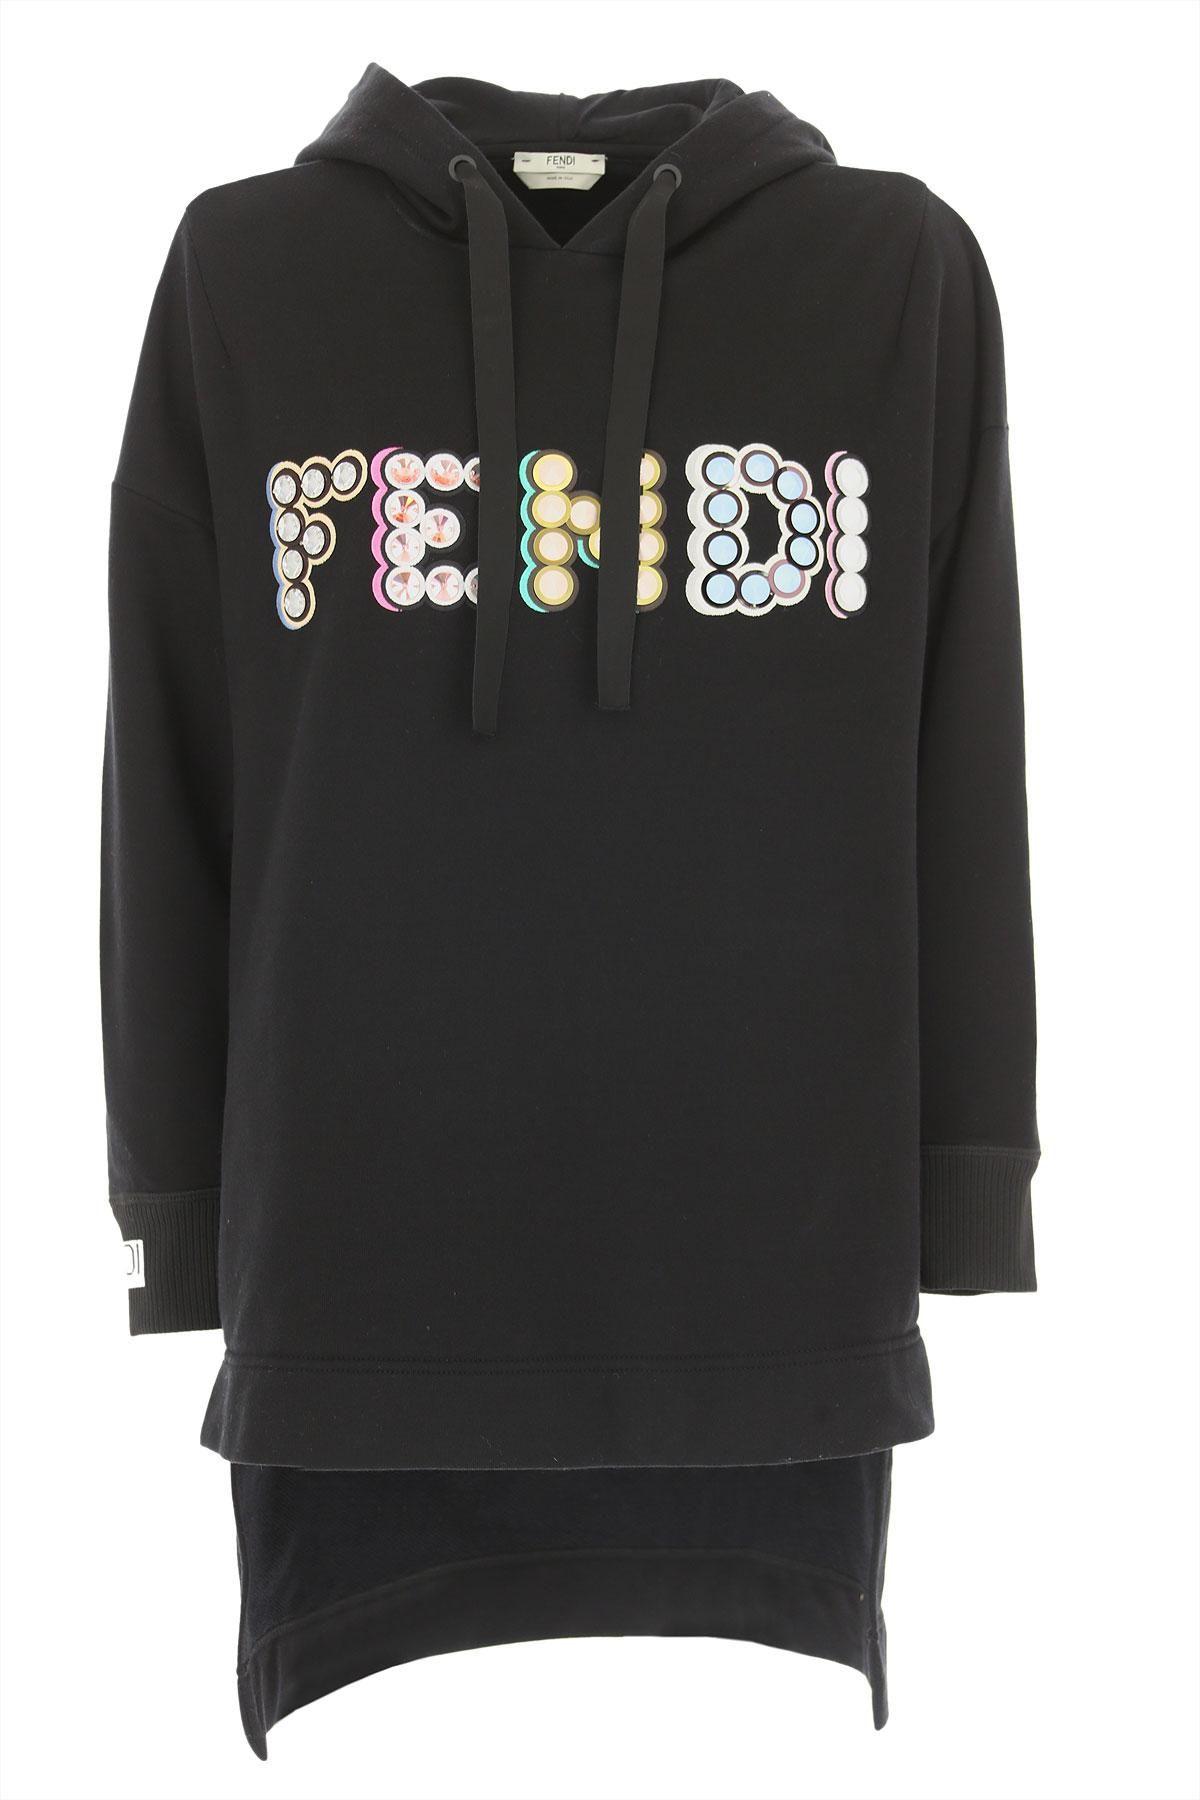 Women Fendi Shirt Logo - Lyst - Fendi Sweatshirt For Women On Sale In Outlet in Black